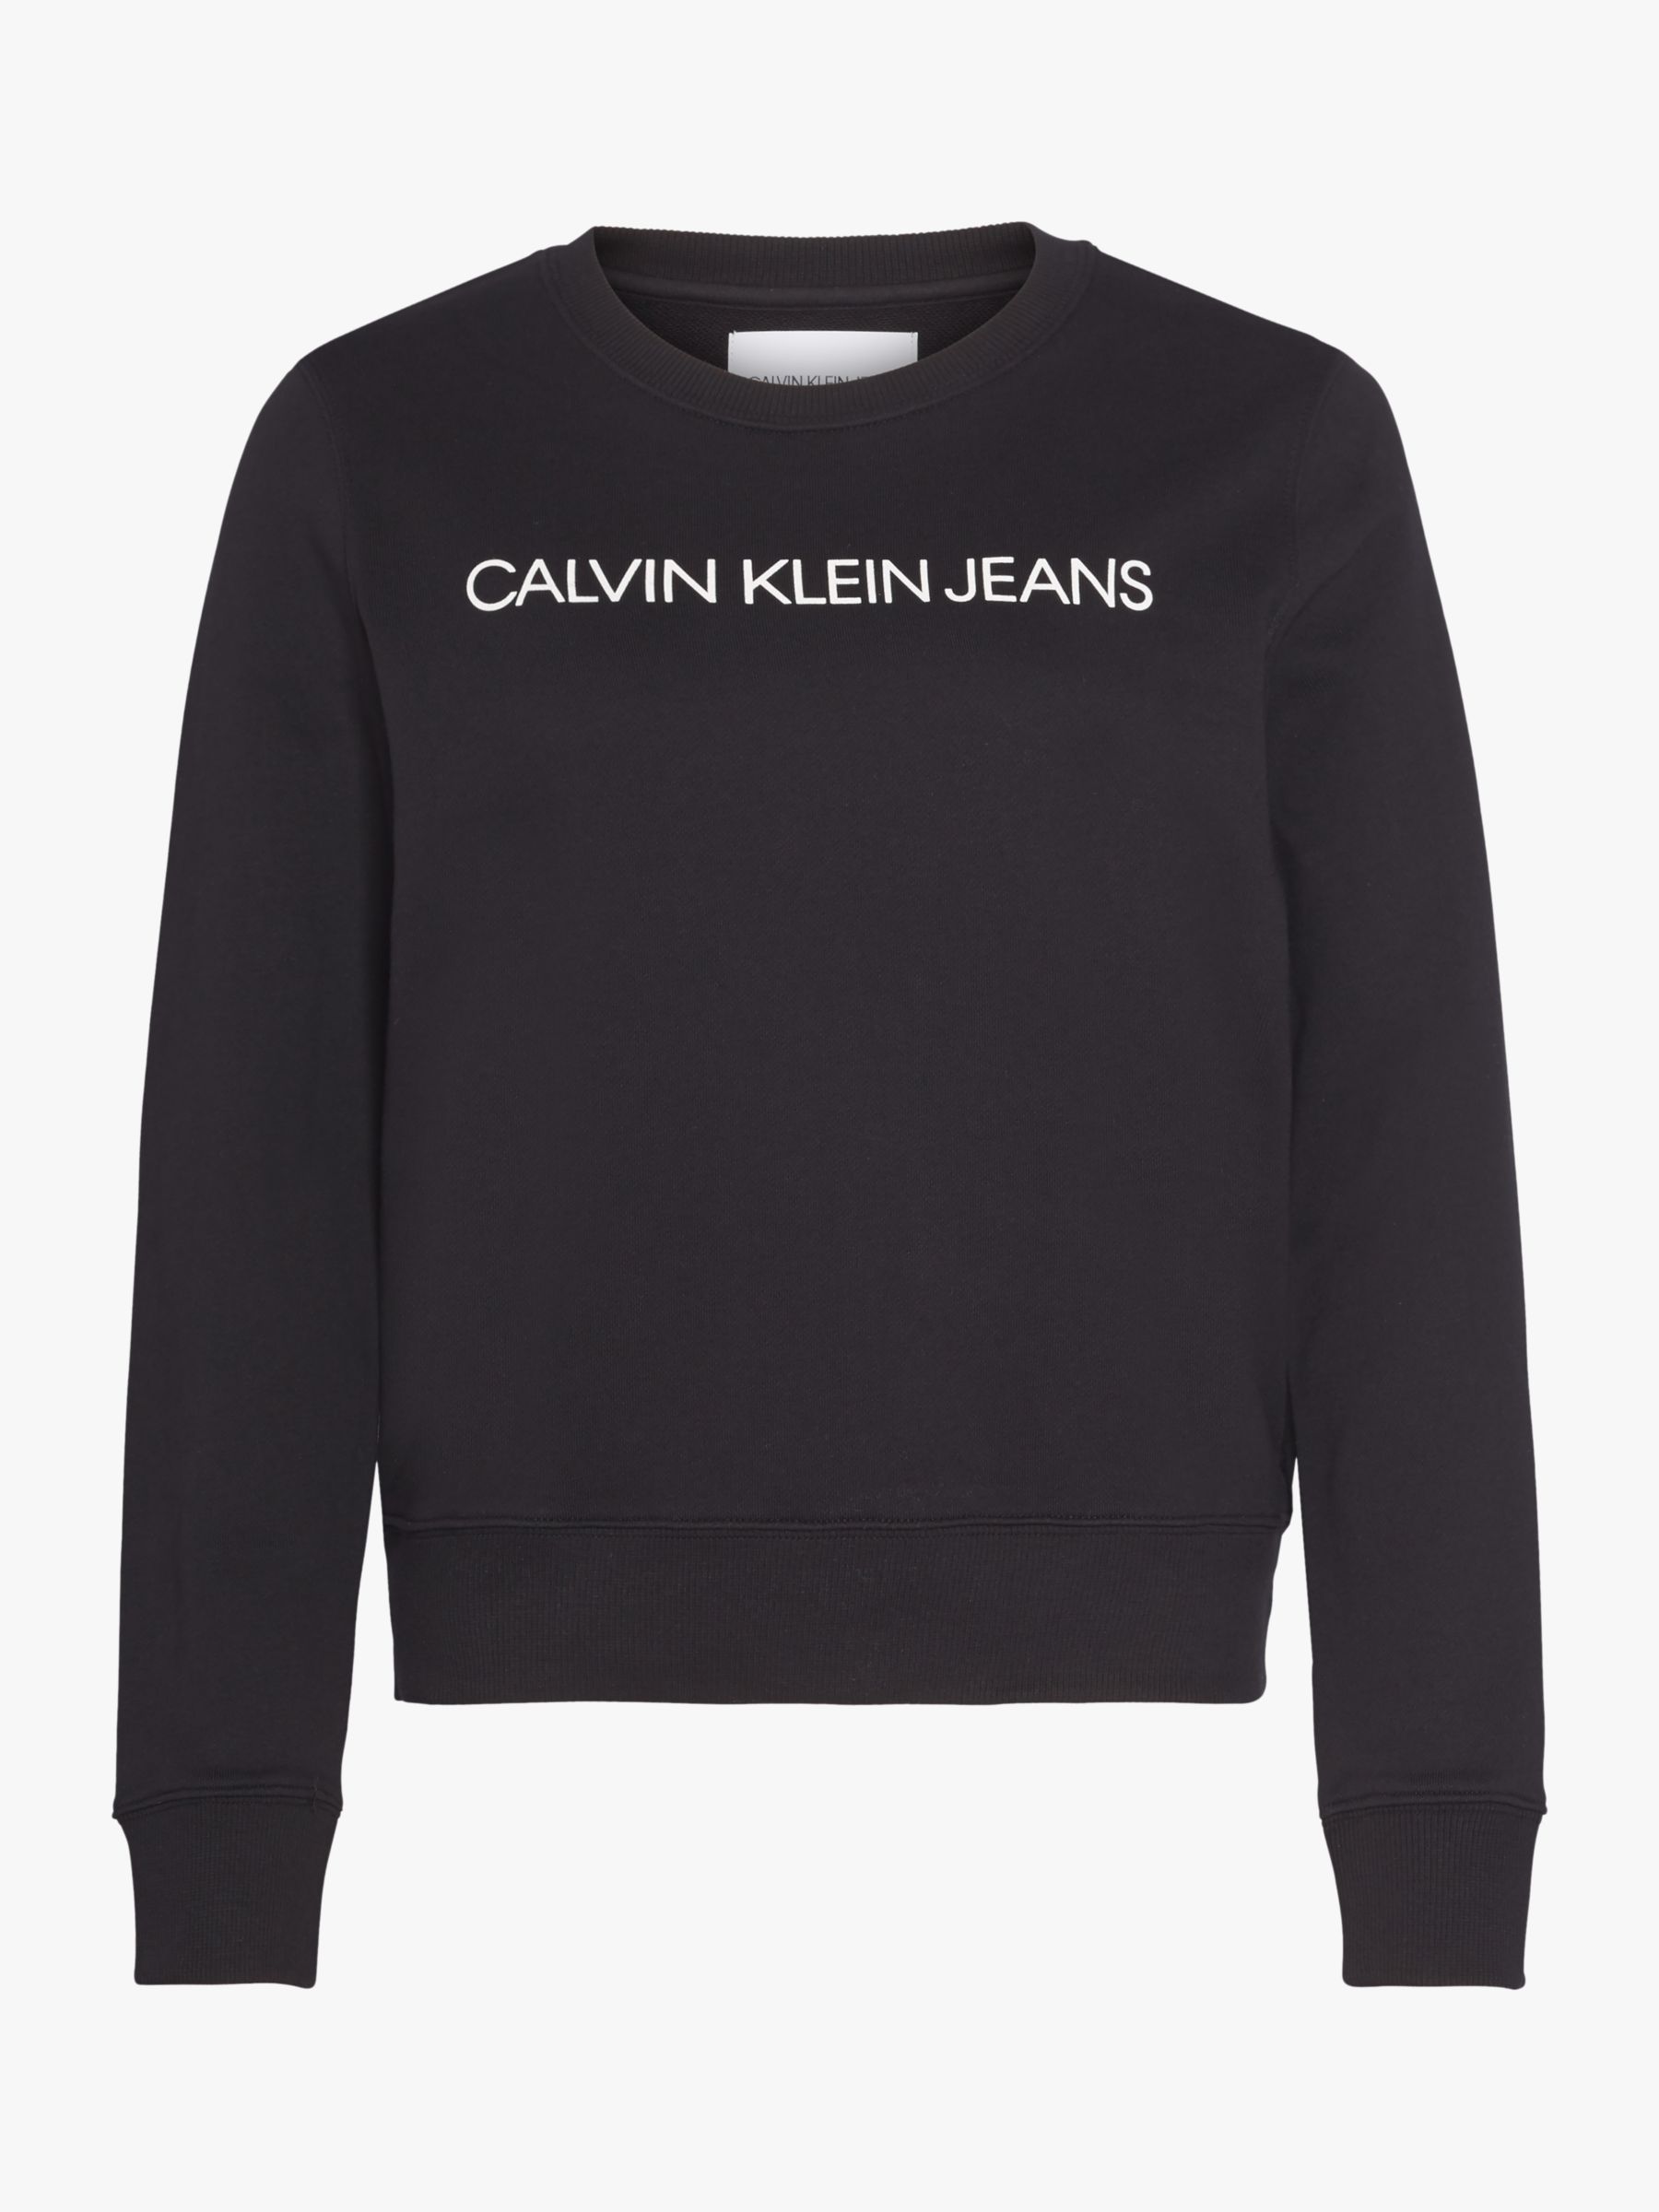 Calvin Klein Jeans Institutional Logo Sweatshirt